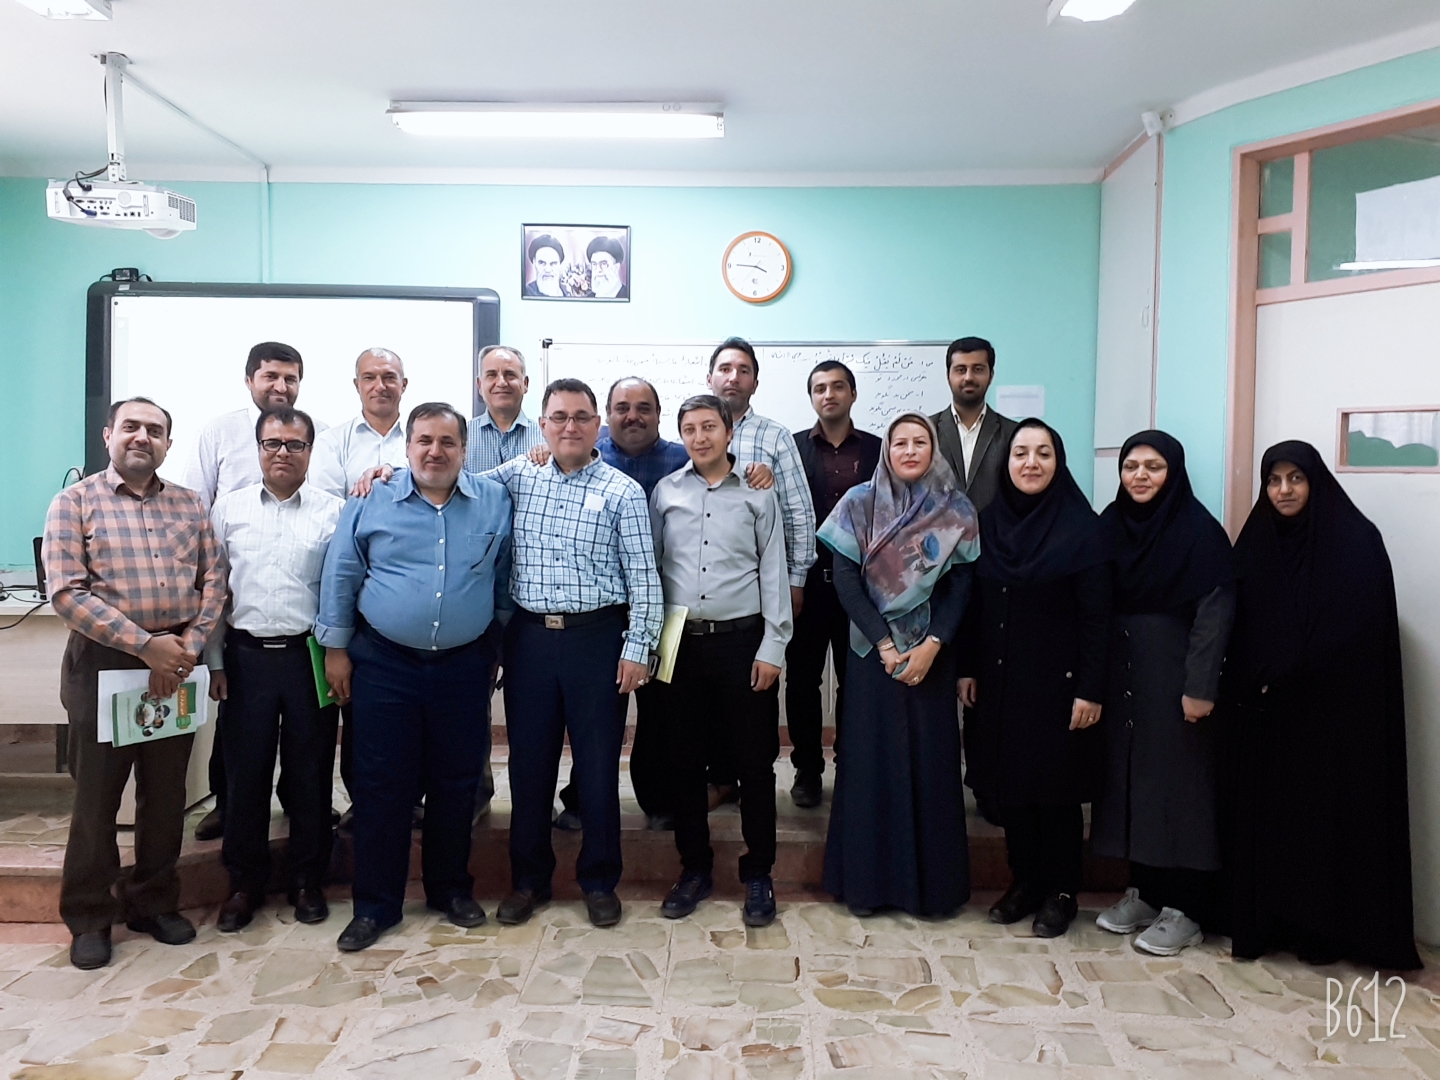 اولین جلسته عربی استان گلستان به اتفاق سرگروههای متوسطه دوم